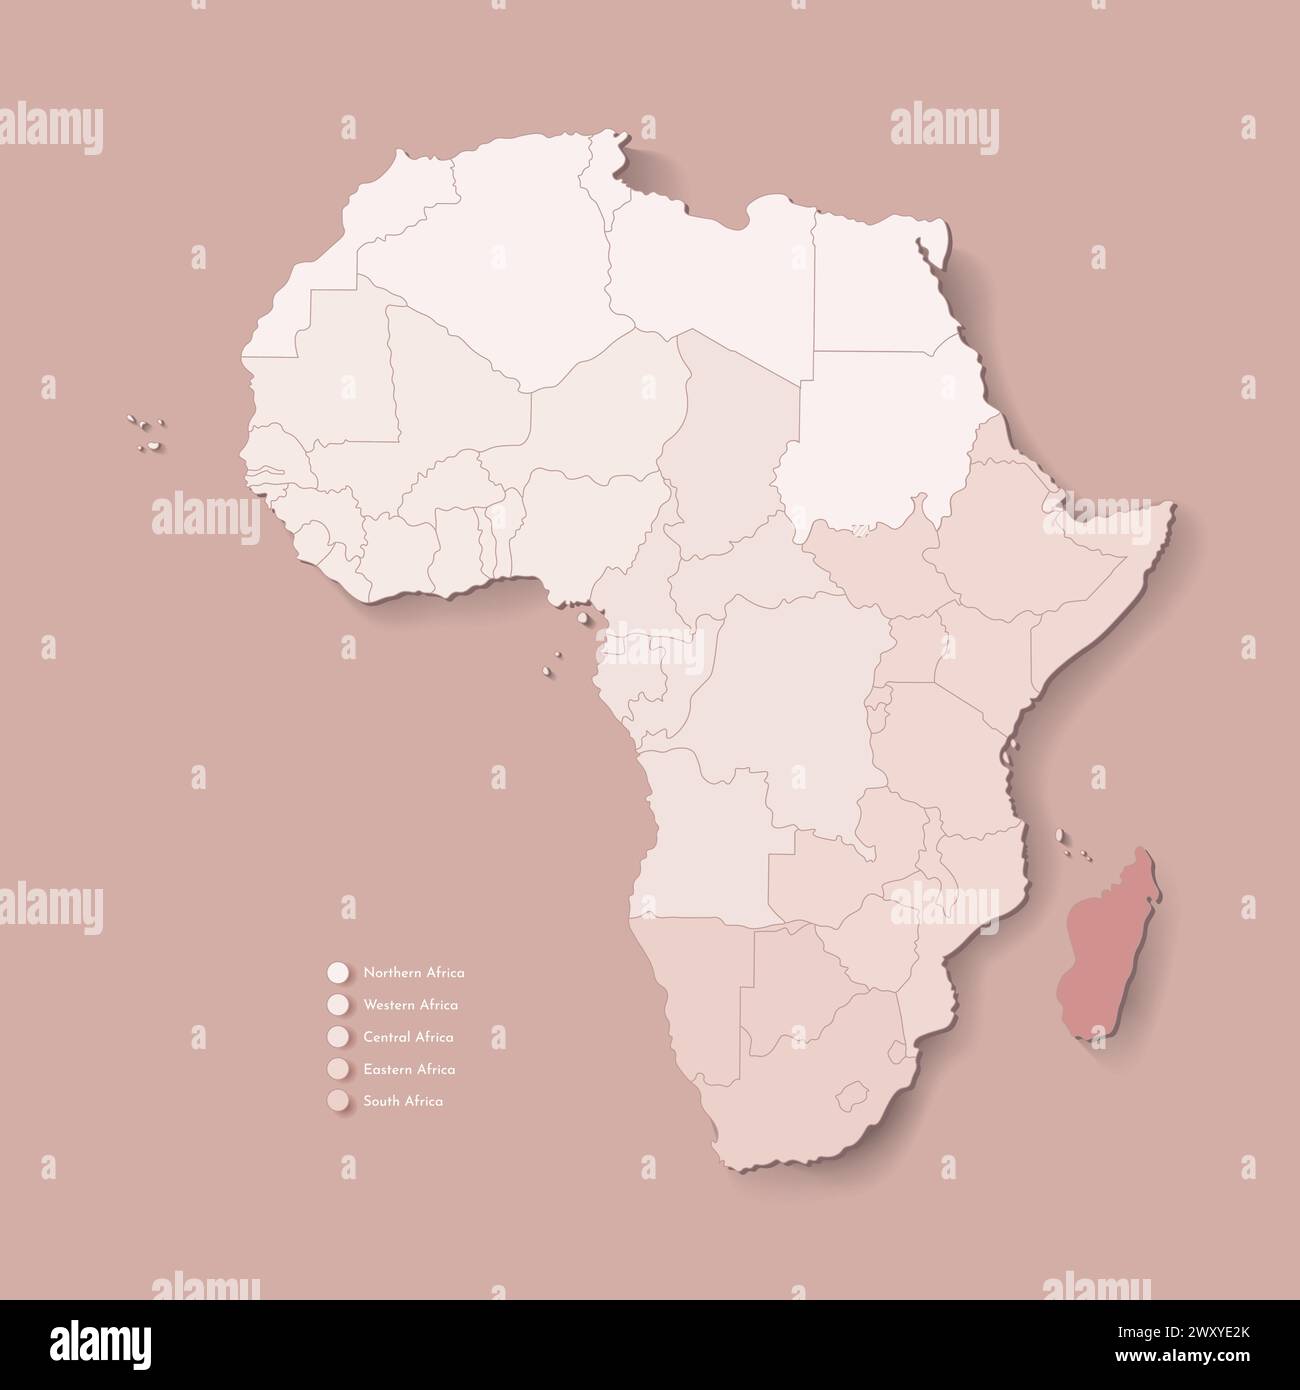 Illustrazione vettoriale con continente africano con confini di tutti gli stati e paese marcato Madagascar. Mappa politica di colore marrone con occidentale, sud Illustrazione Vettoriale